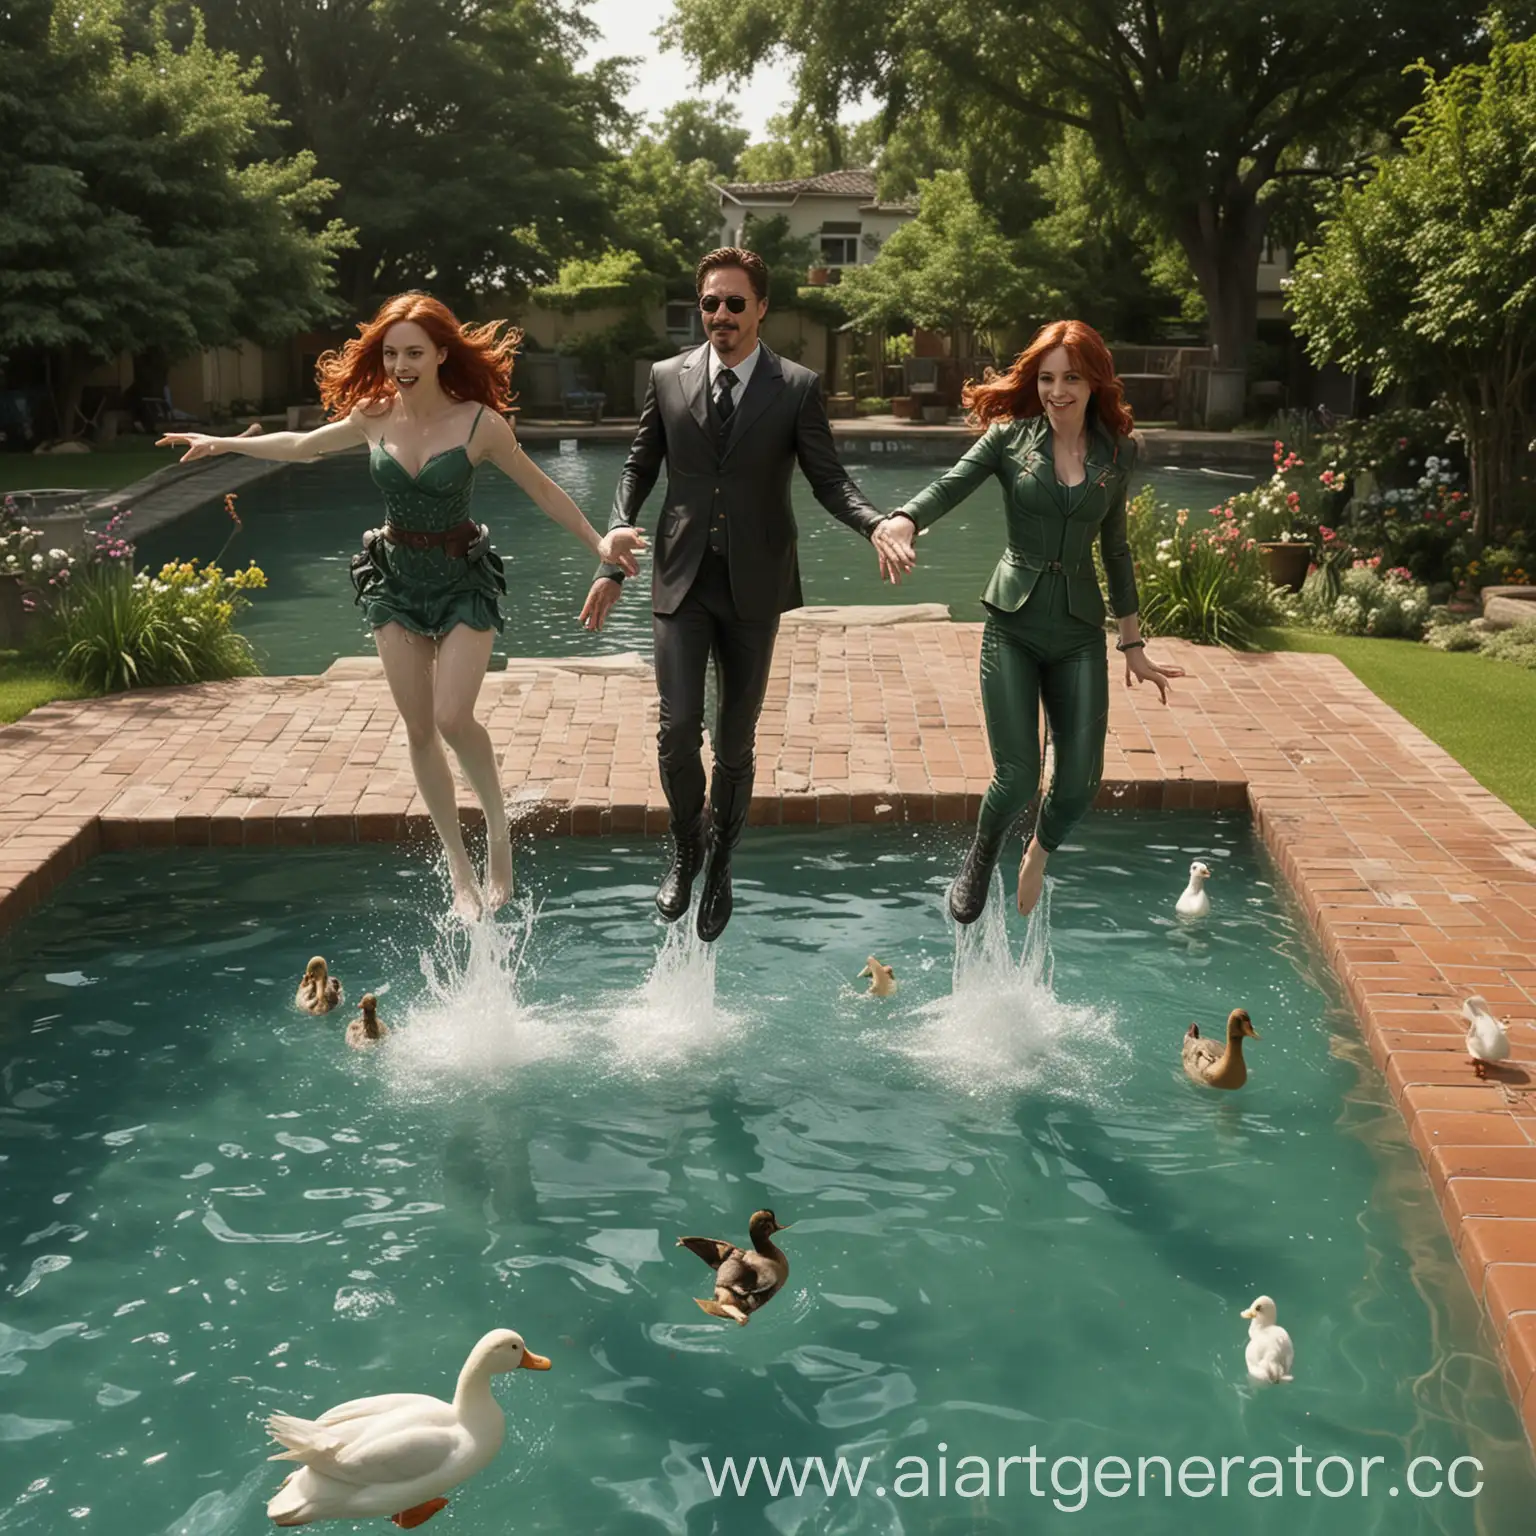 Tony Stark, Natasha Romanoff and Loki jump into a pool with ducks